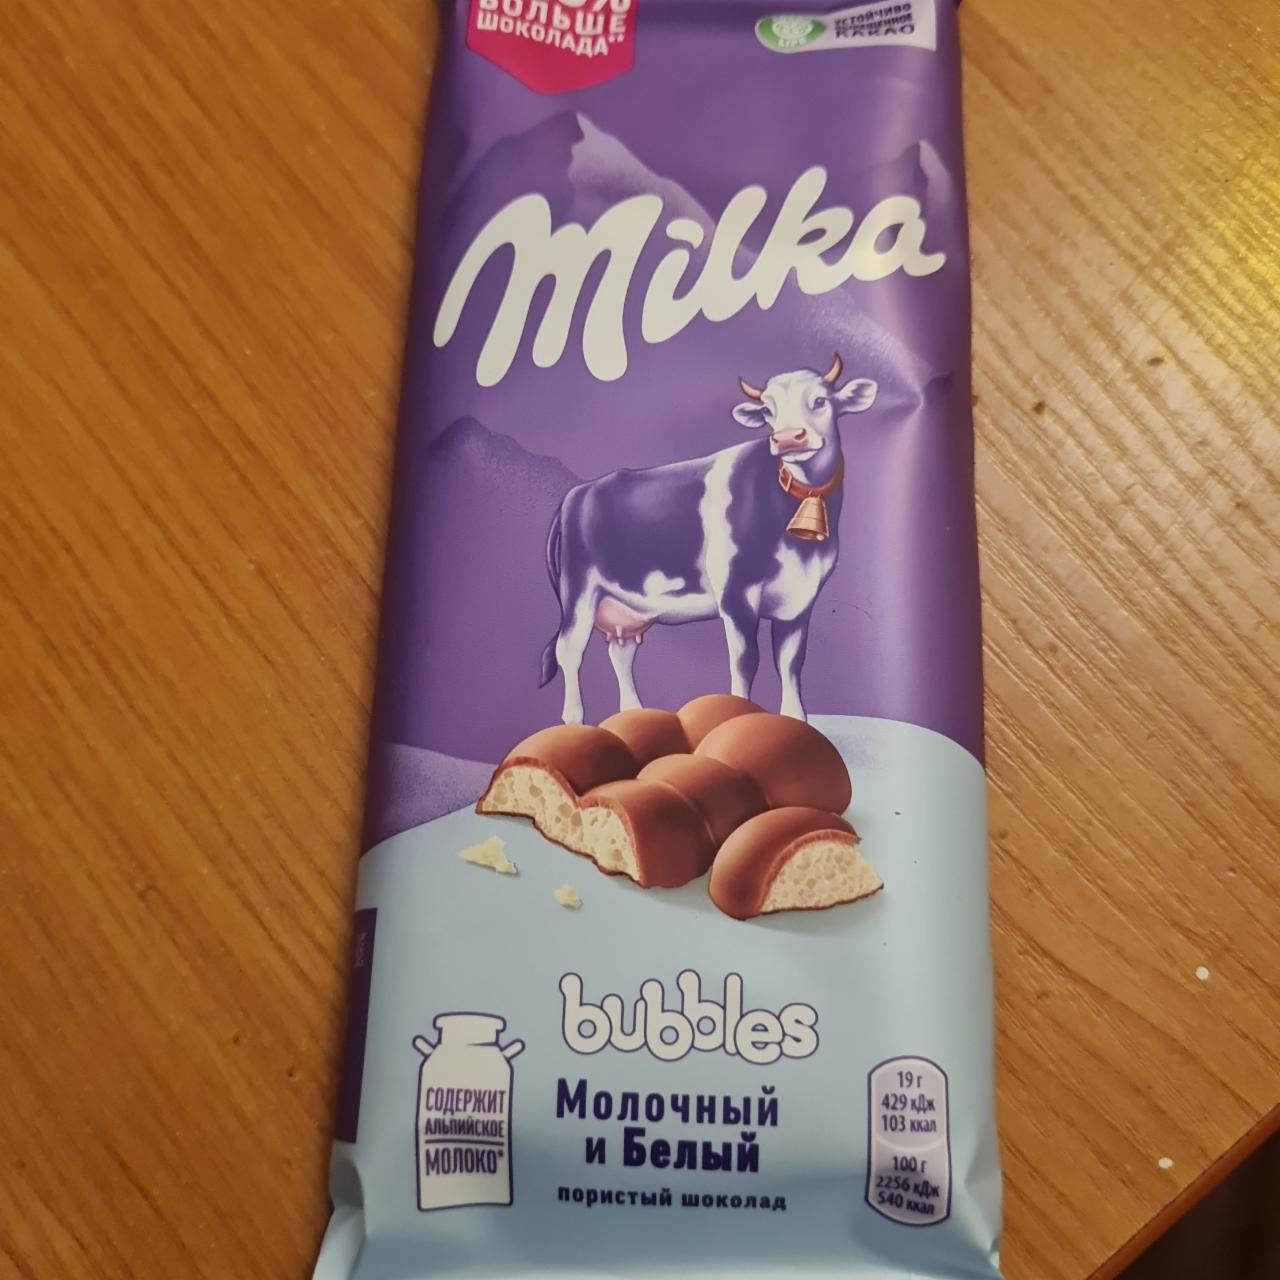 Фото - Шоколад пористый молочный и белый bubbles Milka